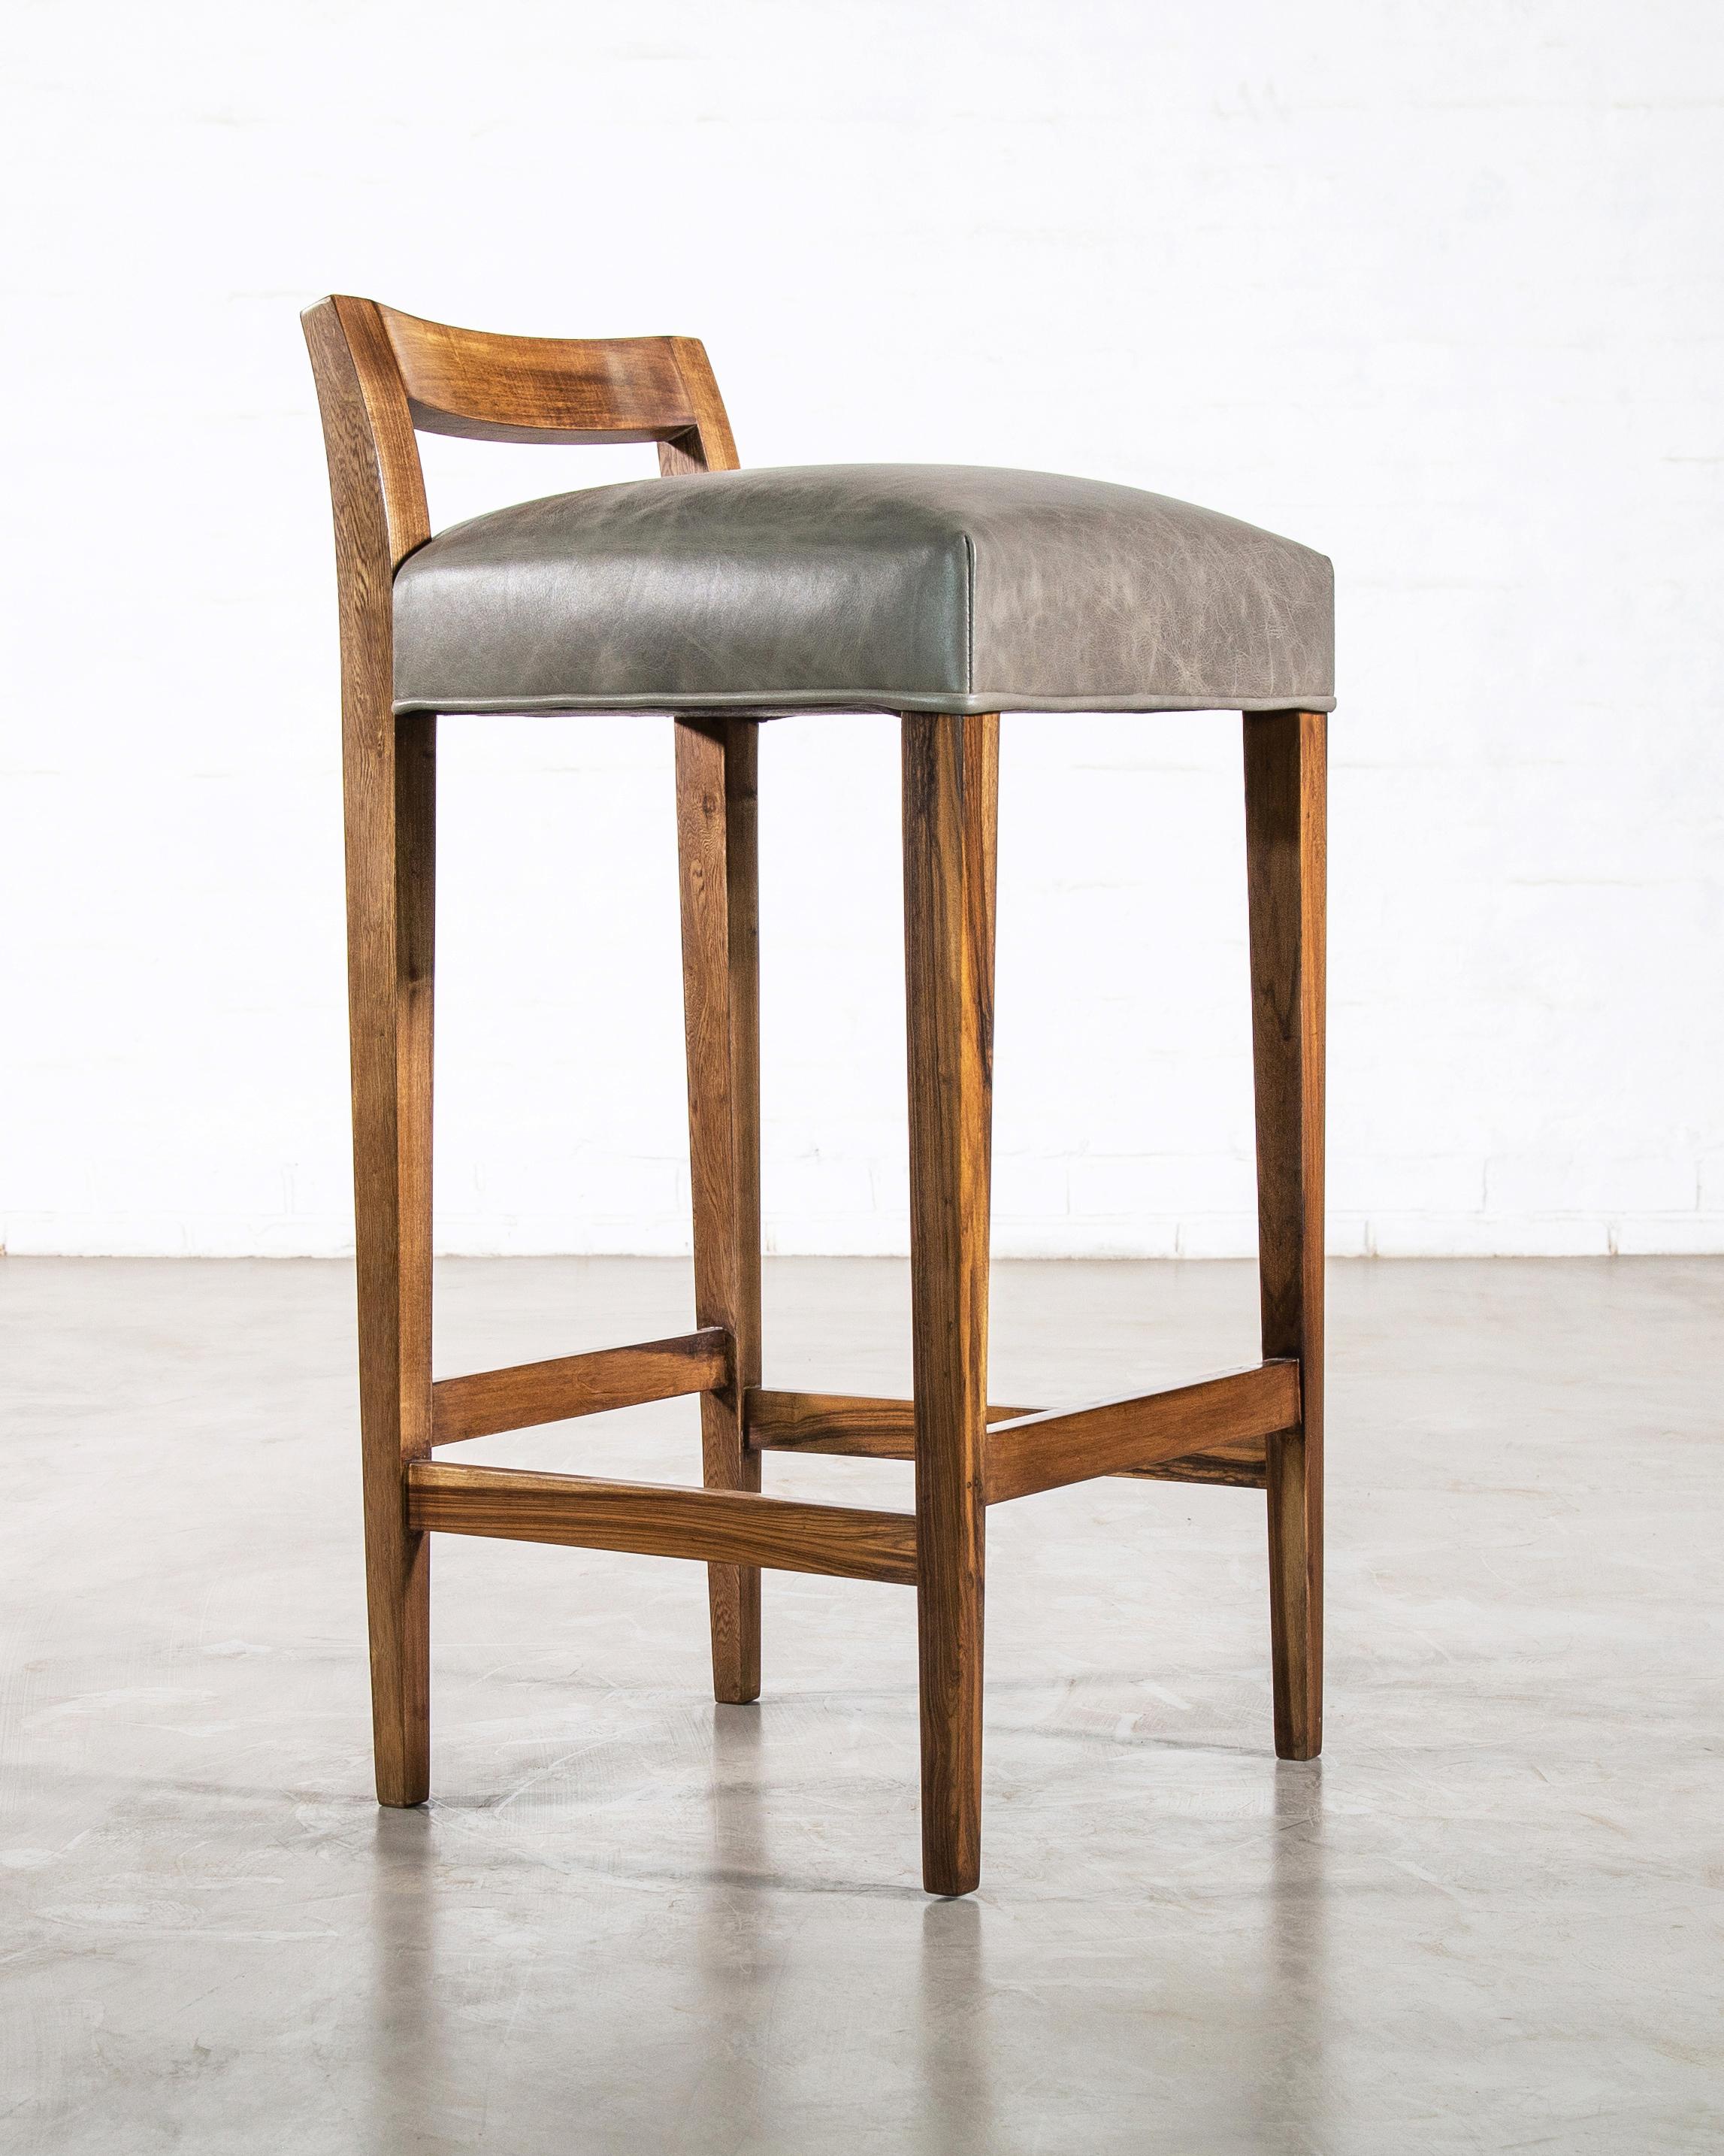 Costantini est fier d'utiliser les bois les plus durs et les plus beaux dans la construction de sa gamme de sièges. Le tabouret Umberto est l'un des modèles de sièges originaux de Costantini. Il présente un dossier moderne, bas et sculpté en bois de